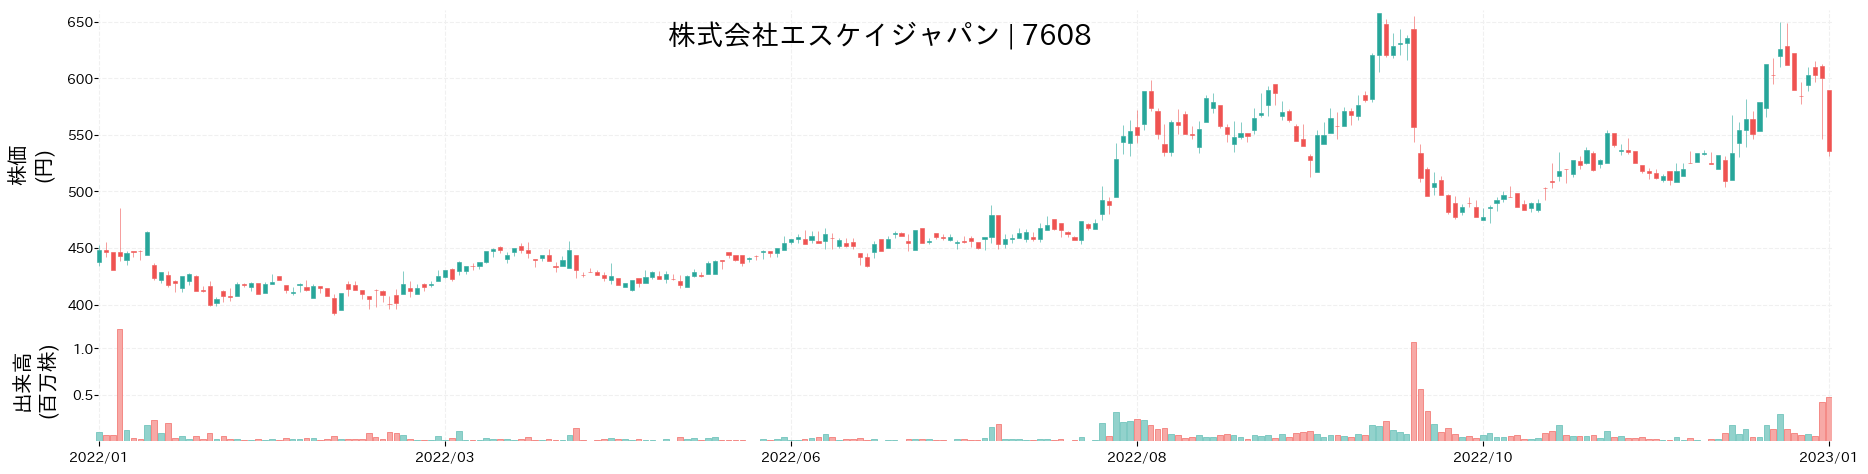 エスケイジャパンの株価推移(2022)